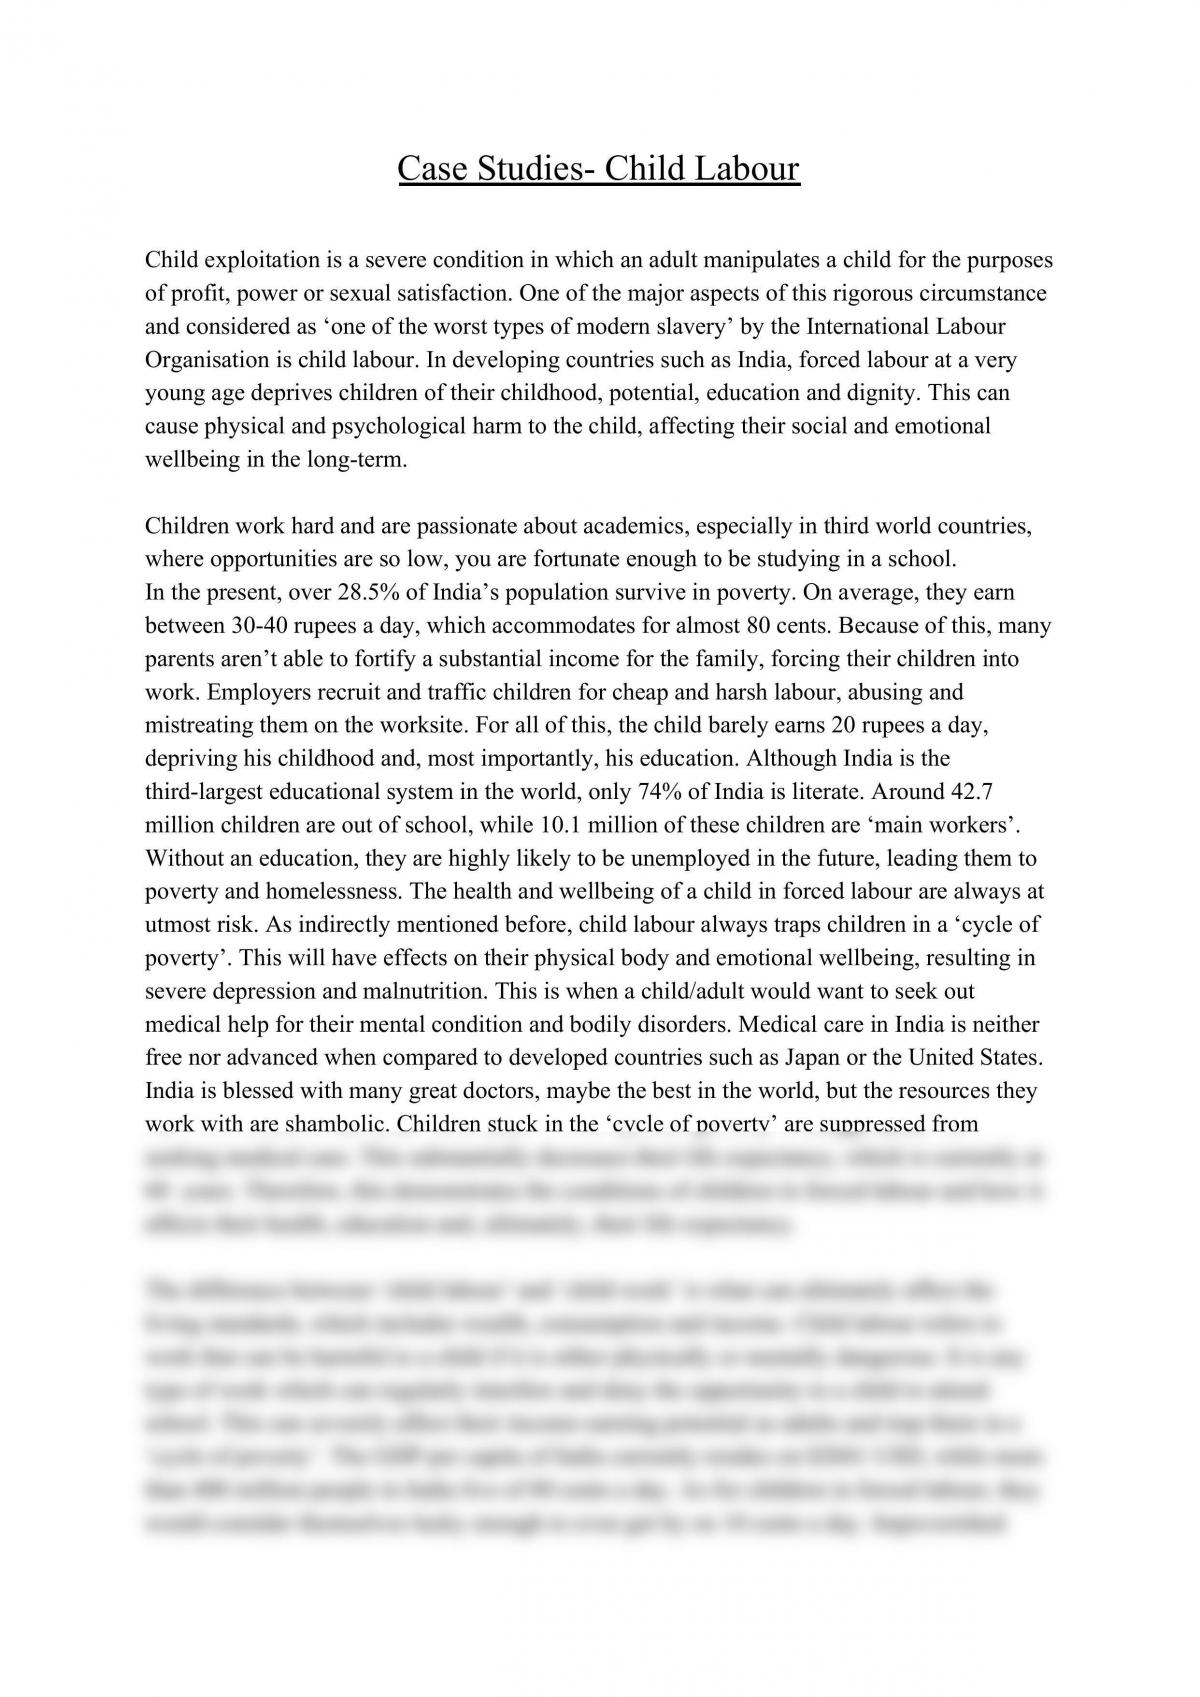 Child Labour Legal Studies practice essay - Page 1